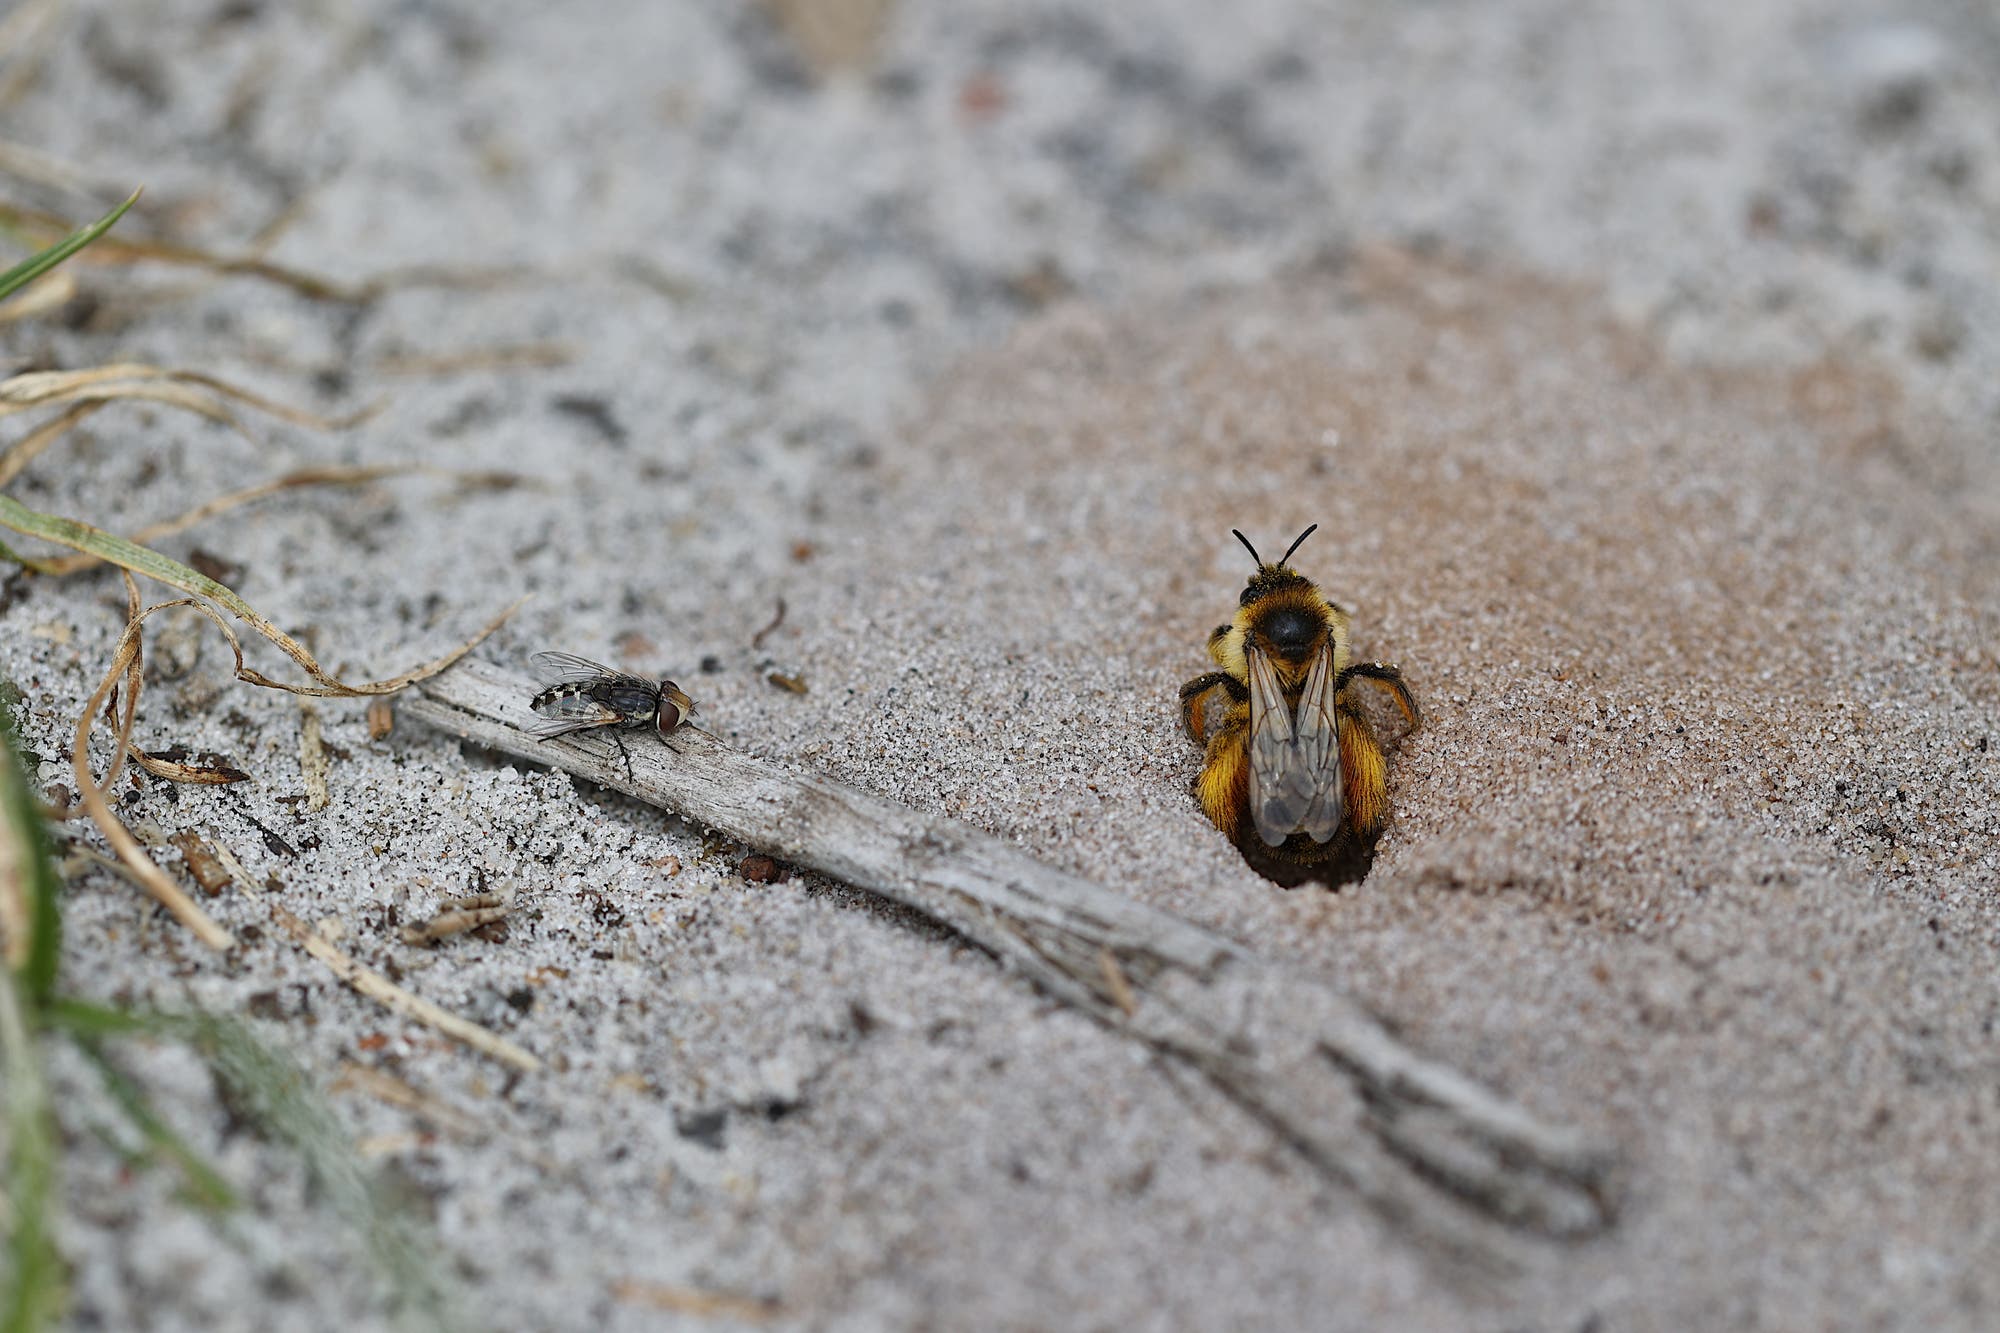 Eine kleine, dunkle parasitäre Fleischfliege sitzt in der linken Bildhälfte auf einem vertrockneten Zweig am Boden und wartet darauf, dass eine Hosenbiene rechts im Bild ihr Nest im sandigen Boden verlässt.